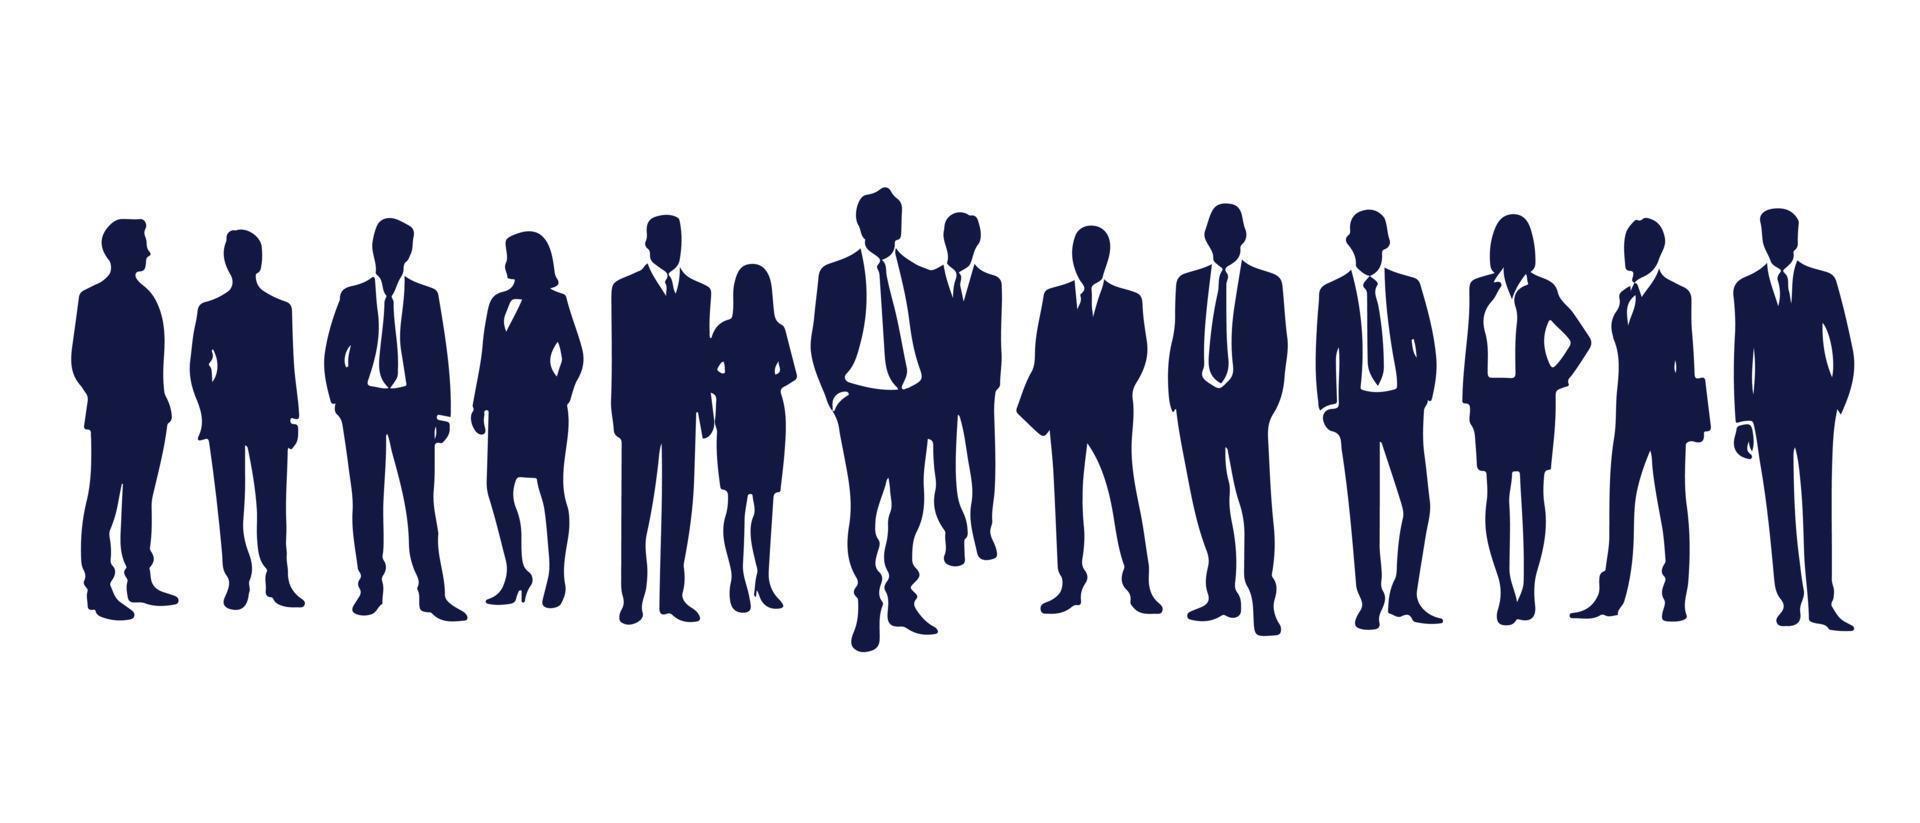 bedrijf mensen silhouet reeks bedrijf Mens en vrouw silhouetten bedrijf team vergadering achtergrond vector illustratie